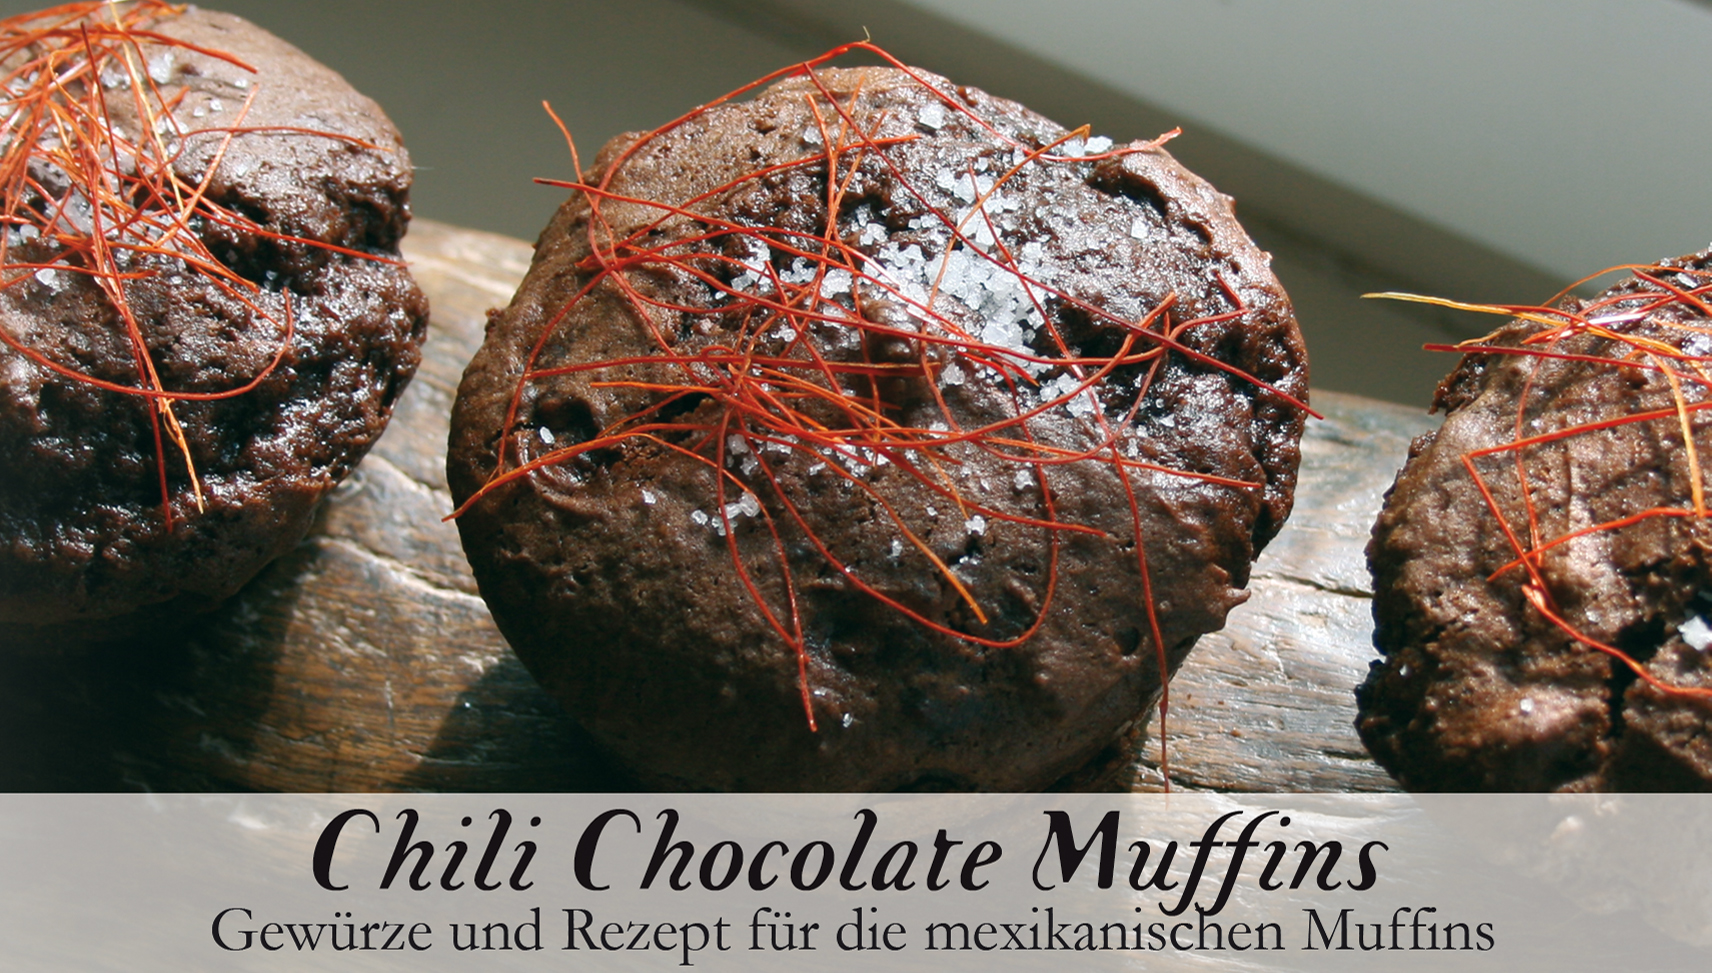 Chilli Chocolate Muffins-Gewürzkasten